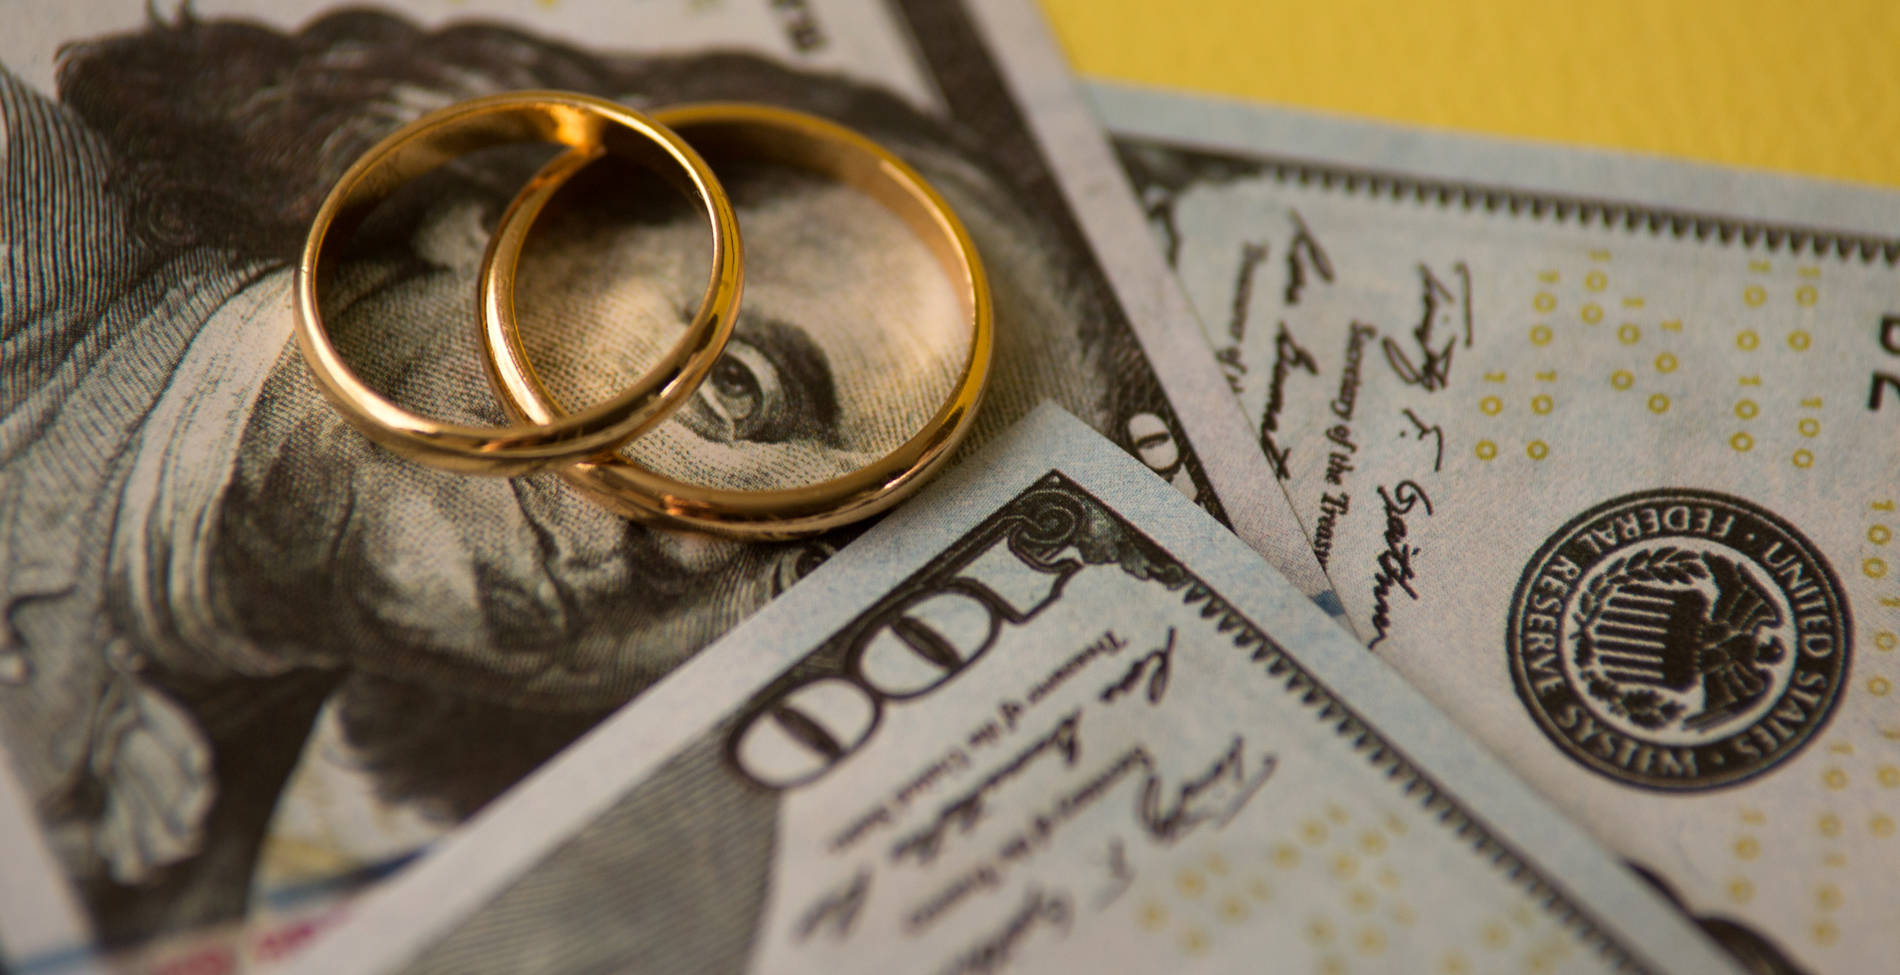 Τα διαζύγια που ξετίναξαν τραπεζικούς λογαριασμούς και εγωισμούς